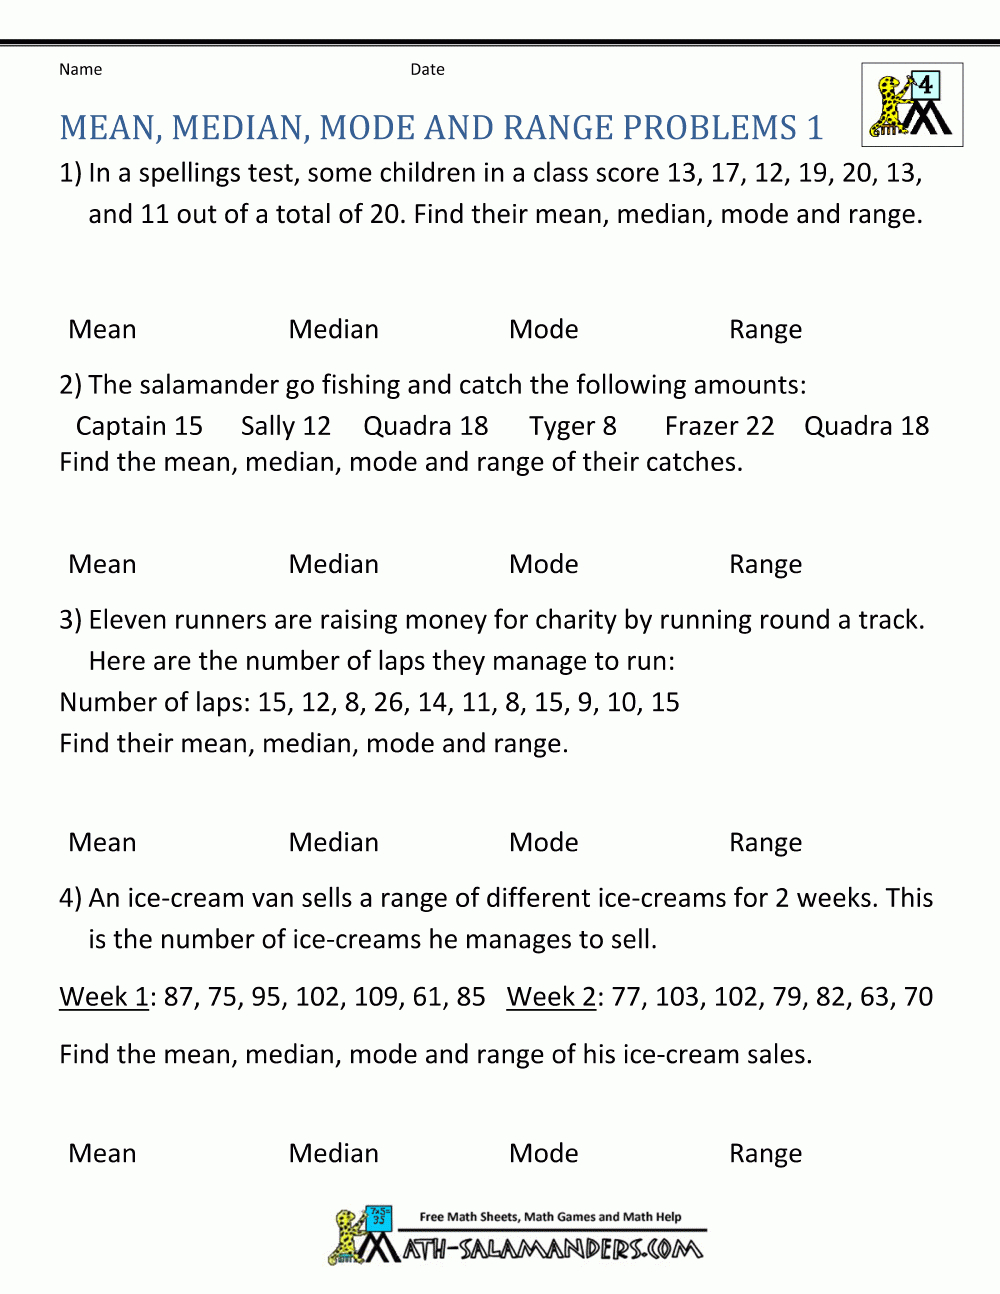 Statistics Worksheets Mean Median Mode Range Problems 1 | 5Th Grade | Free Printable Statistics Worksheets